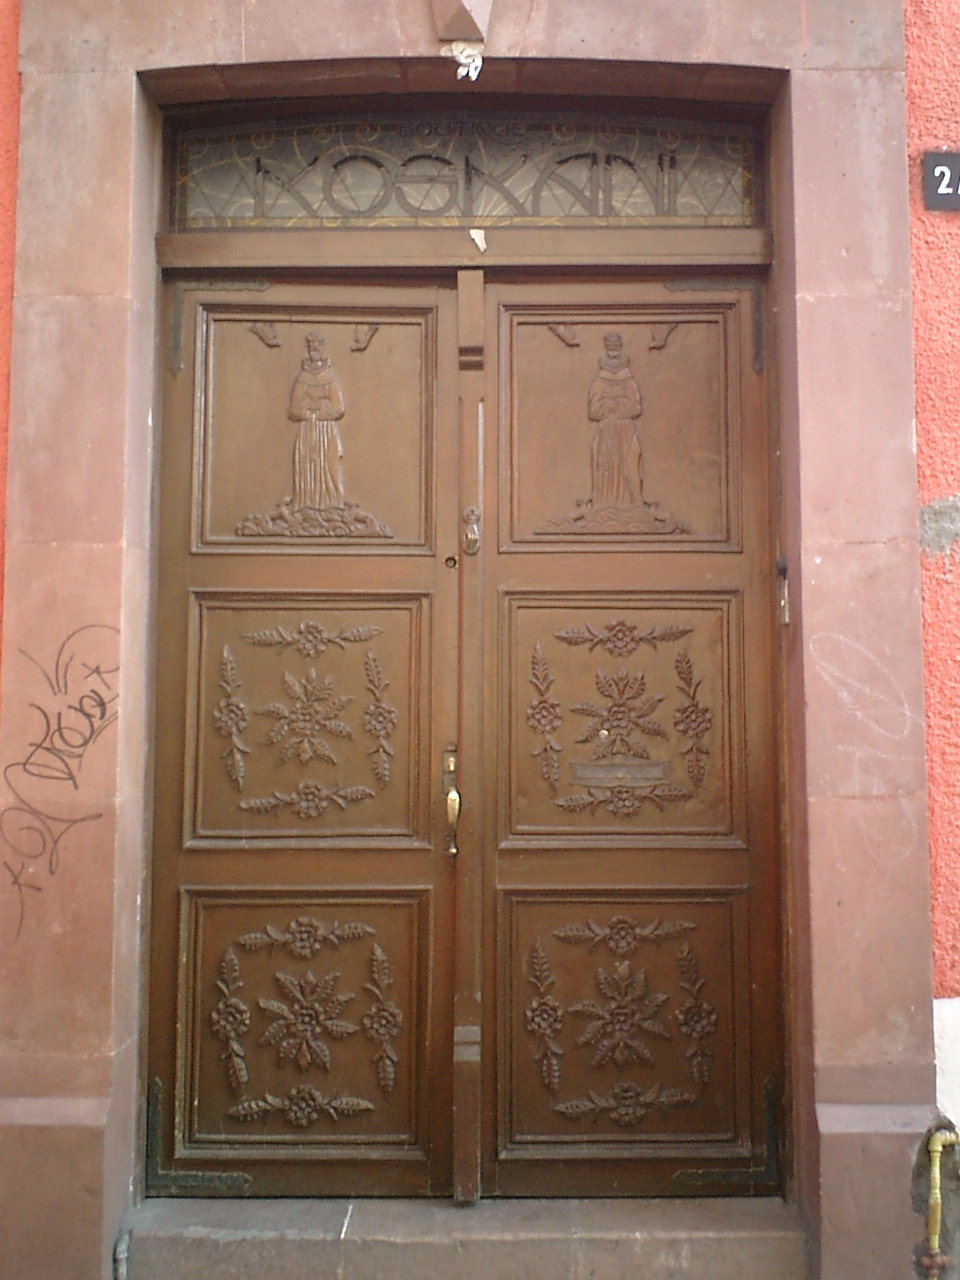 メキシコの装飾が入った茶色の扉